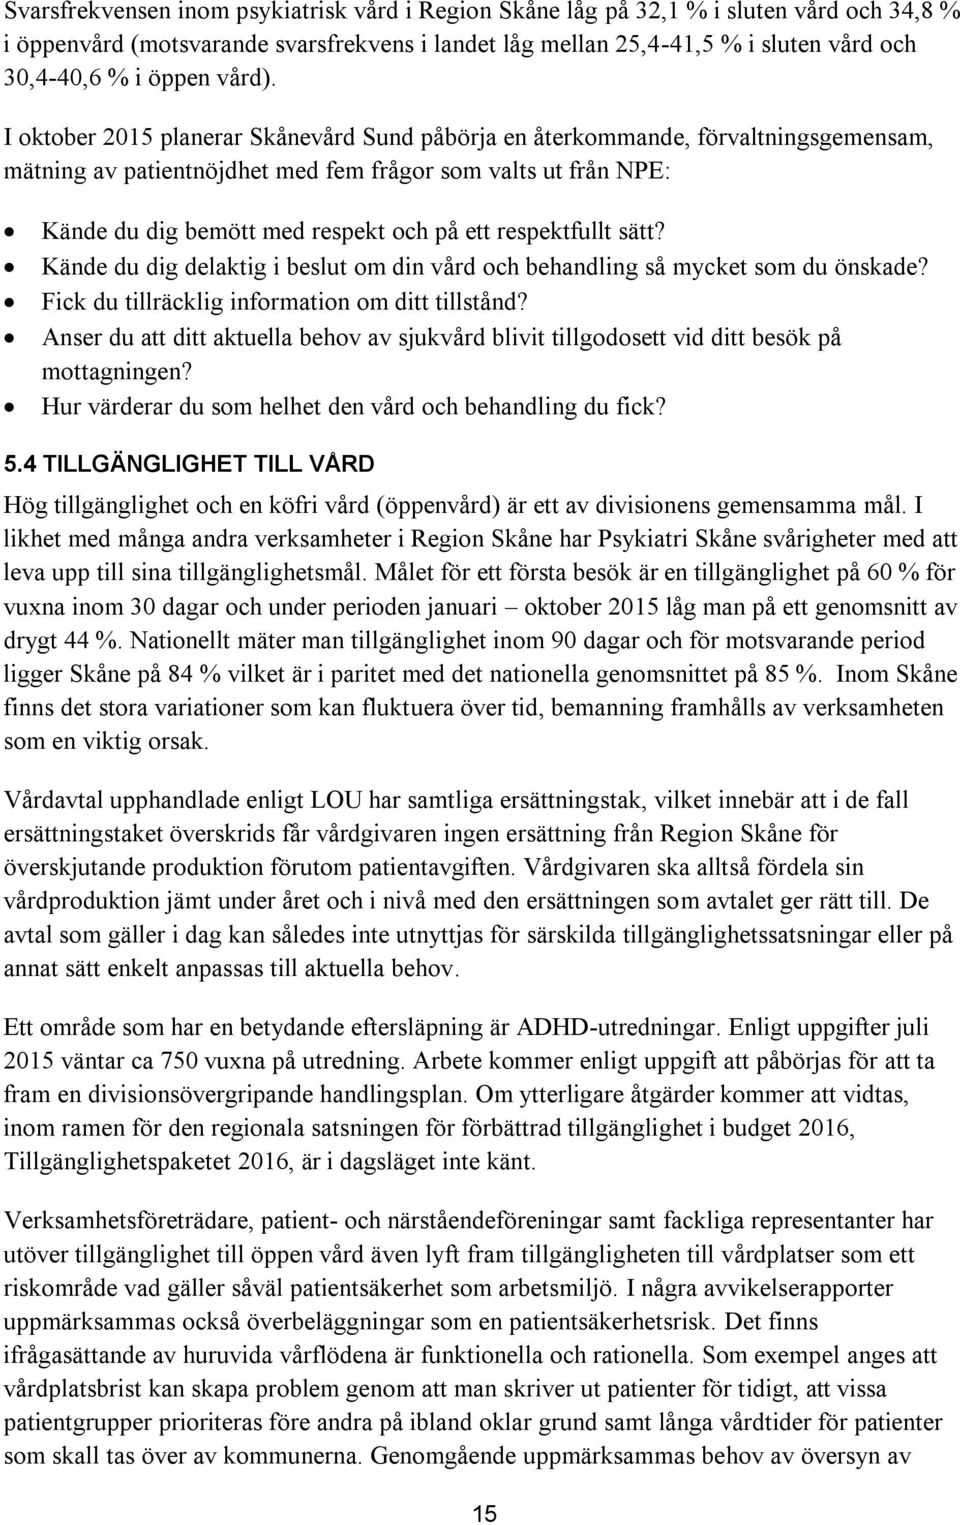 I oktober 2015 planerar Skånevård Sund påbörja en återkommande, förvaltningsgemensam, mätning av patientnöjdhet med fem frågor som valts ut från NPE: Kände du dig bemött med respekt och på ett